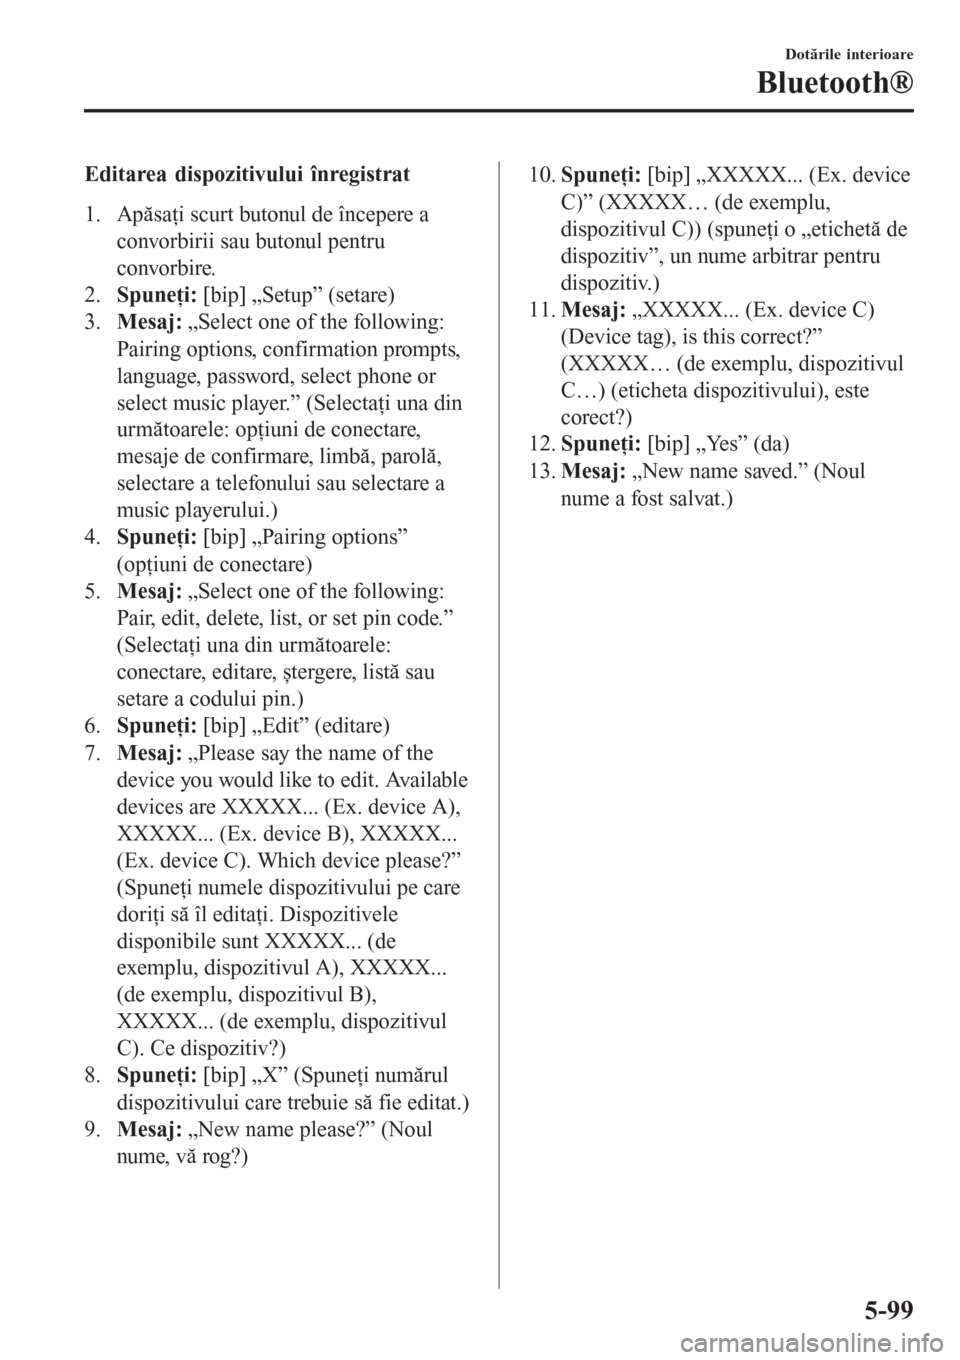 MAZDA MODEL 3 HATCHBACK 2015  Manualul de utilizare (in Romanian) Editarea dispozitivului înregistrat
1. Apăsaţi scurt butonul de începere a
convorbirii sau butonul pentru
convorbire.
2.Spuneţi: [bip] „Setup” (setare)
3.Mesaj: „Select one of the following